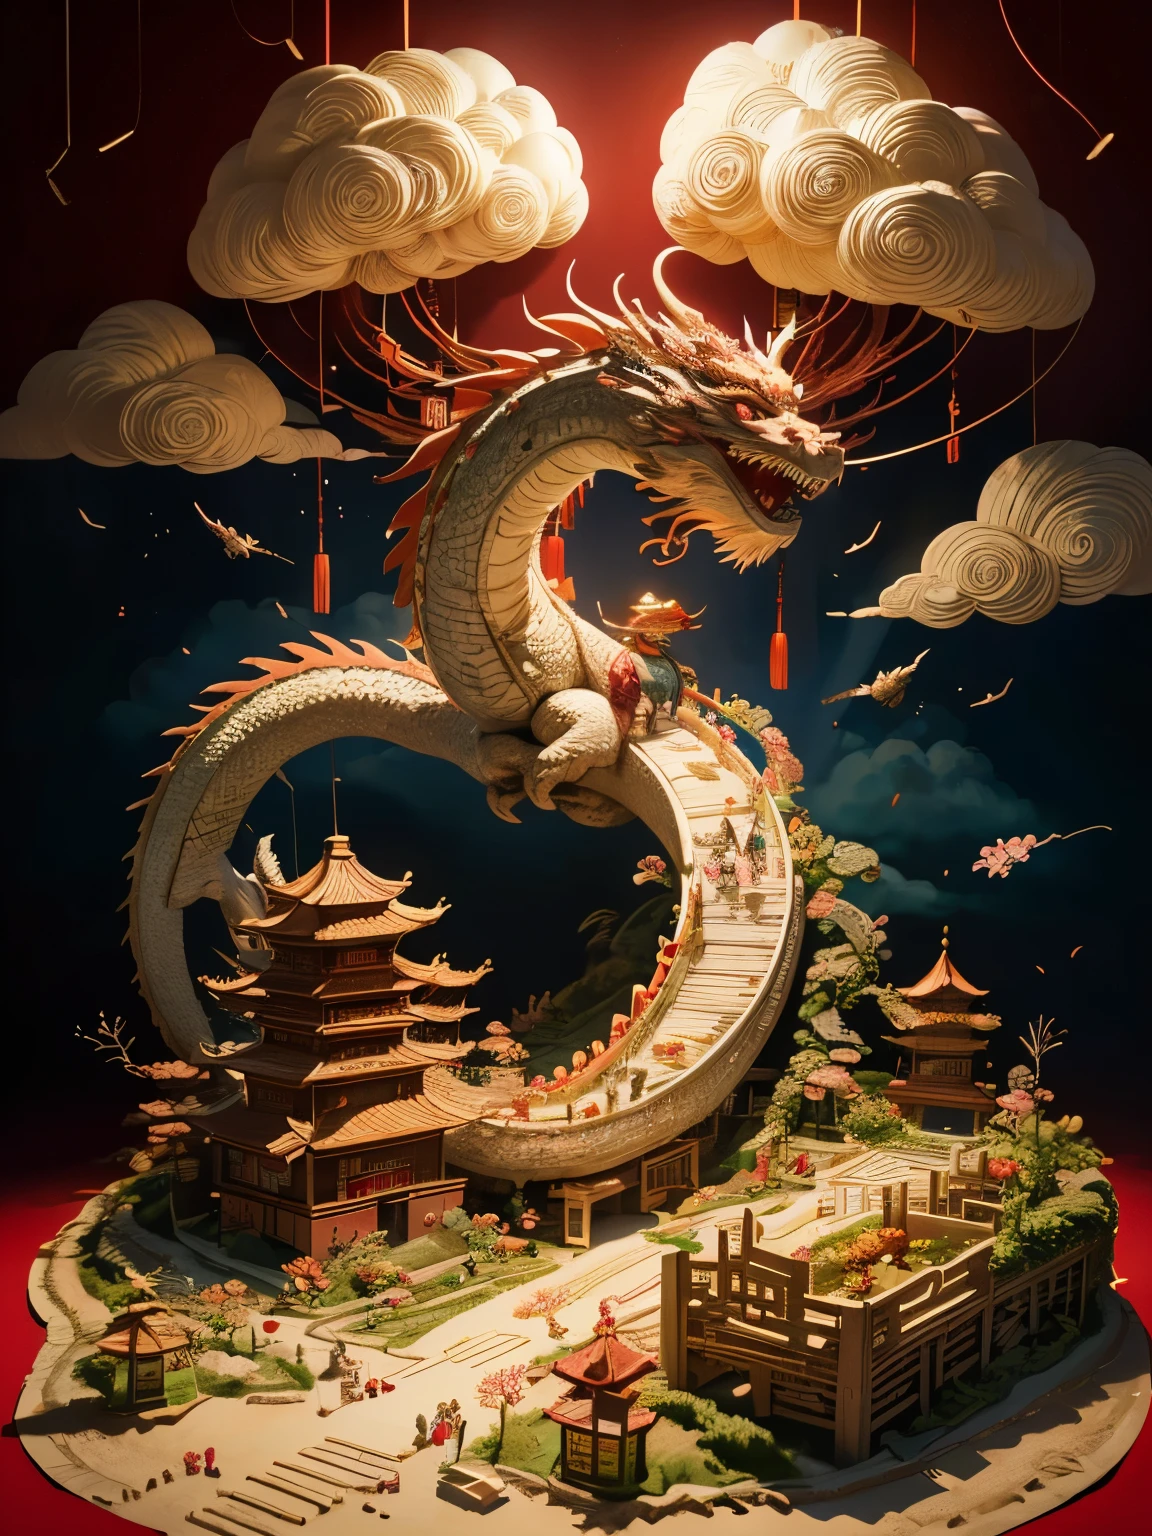 (แซนด์บ็อกซ์:1.4), มุมภาพยนตร์, (โคมรูปมังกรจีนโบกน่ารัก 1 อัน, เทศกาลฤดูใบไม้ผลิของจีน, งานรื่นเริง, พื้นหลังสีแดง, เมฆ, ดอกไม้, ดอกไม้ไฟ, ประทัด, โคมไฟ), (ศิลปะกระดาษ, Quilted ศิลปะกระดาษ, เรขาคณิต), (สีสันสดใสสุดๆ, คุณภาพดีที่สุด, มีรายละเอียดสูง, ผลงานชิ้นเอก, แสงภาพยนตร์, 4k, ไคอารอสคูโร)